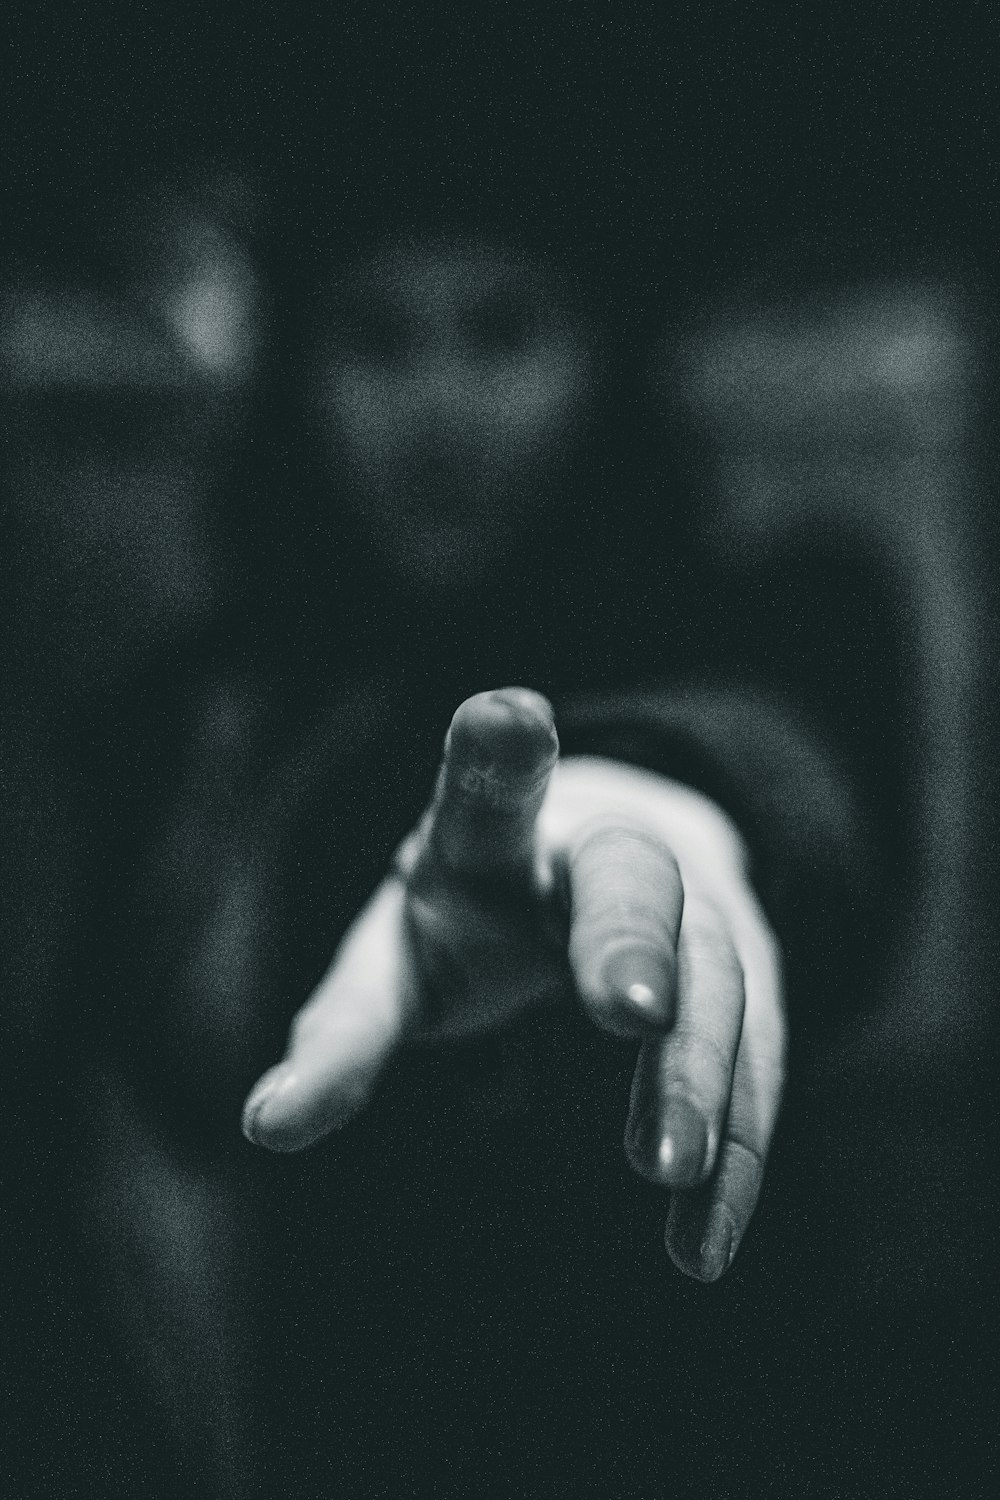 Una foto in bianco e nero di una persona che indica qualcosa